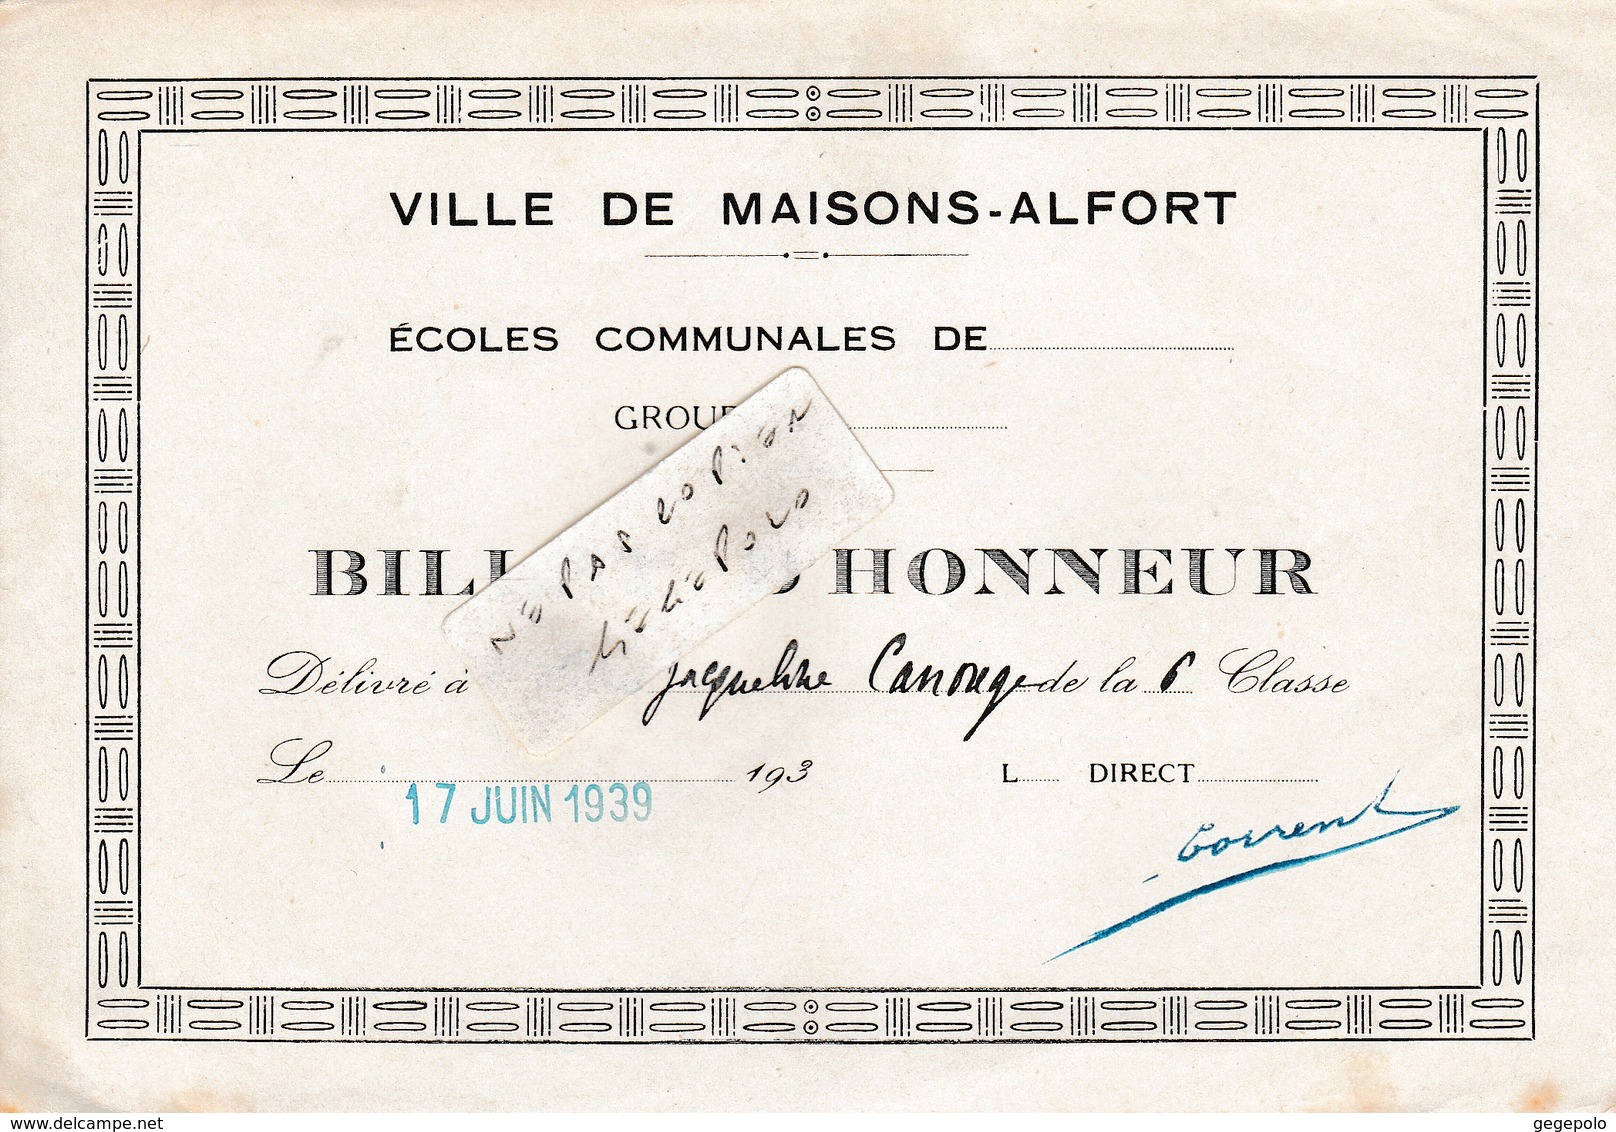 Ville De MAISONS-ALFORT (94) - Ecoles Communales Jules Ferry -  ( 2 ) Billet D'Honneur  ( En L'état D'usage ) - Diploma's En Schoolrapporten